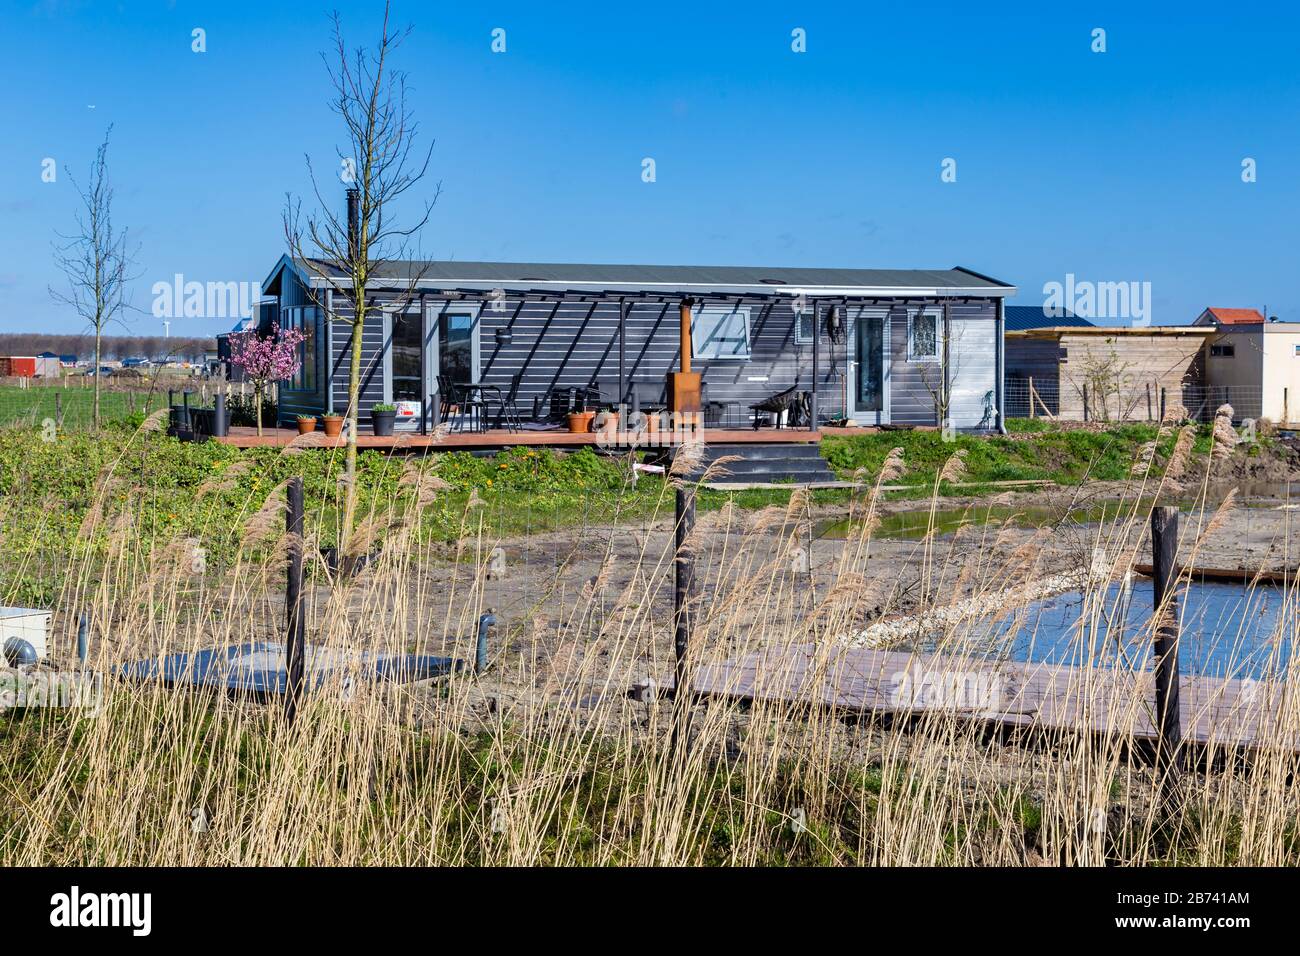 Almere, Pays-Bas, 12 mars 2020: Maison minuscule écologique en bois dans une nouvelle usine expérimentale déstricte d'Oosterwold à Almere. Banque D'Images